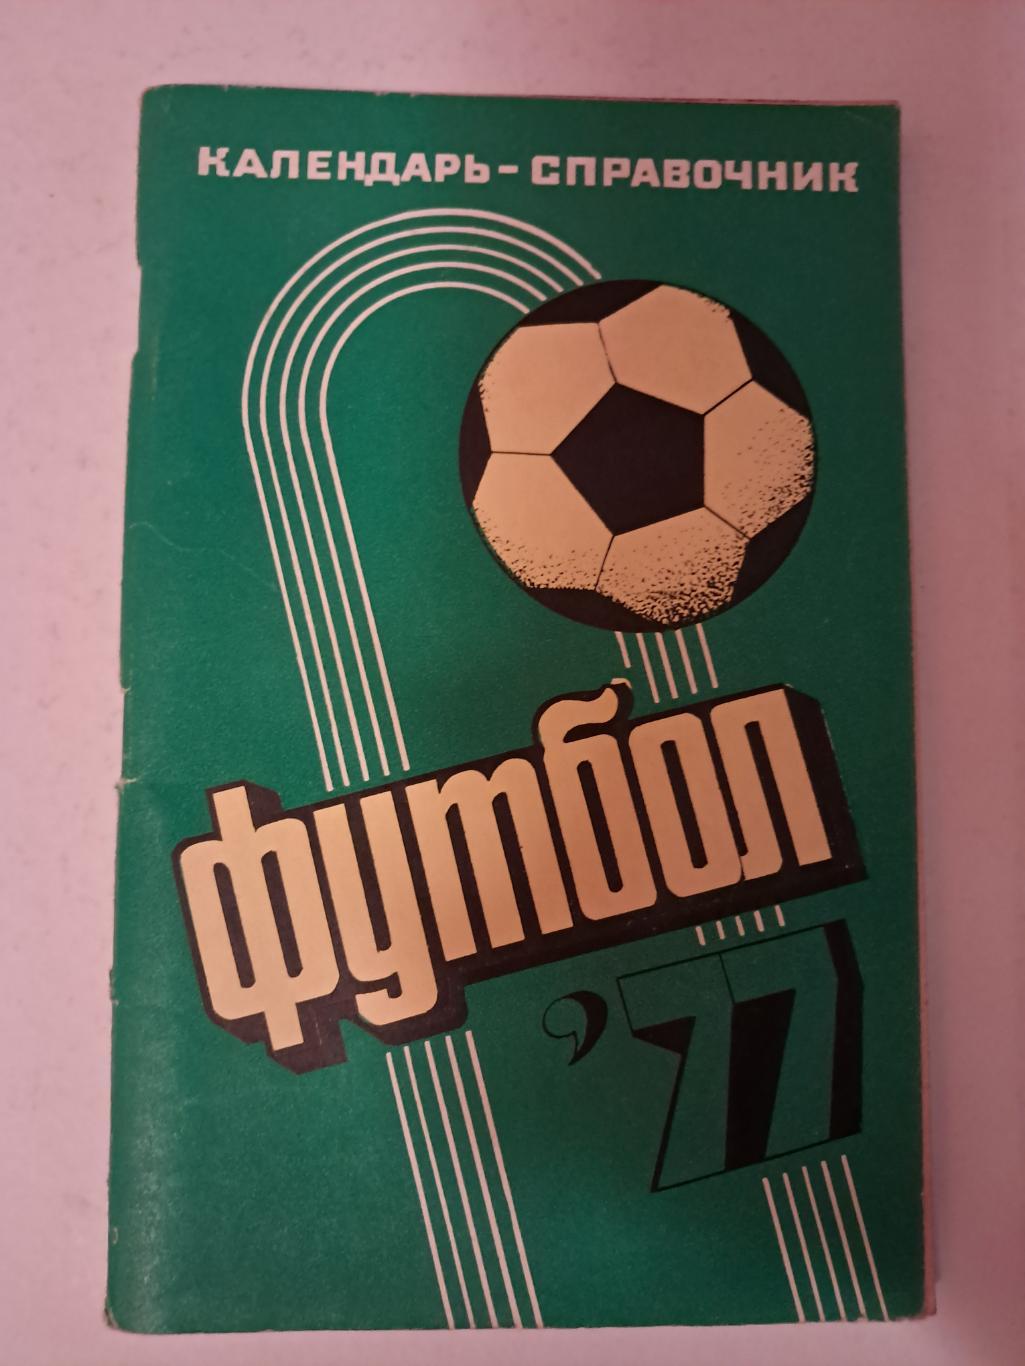 Календарь-справочник по футболу 1977 Краснодар